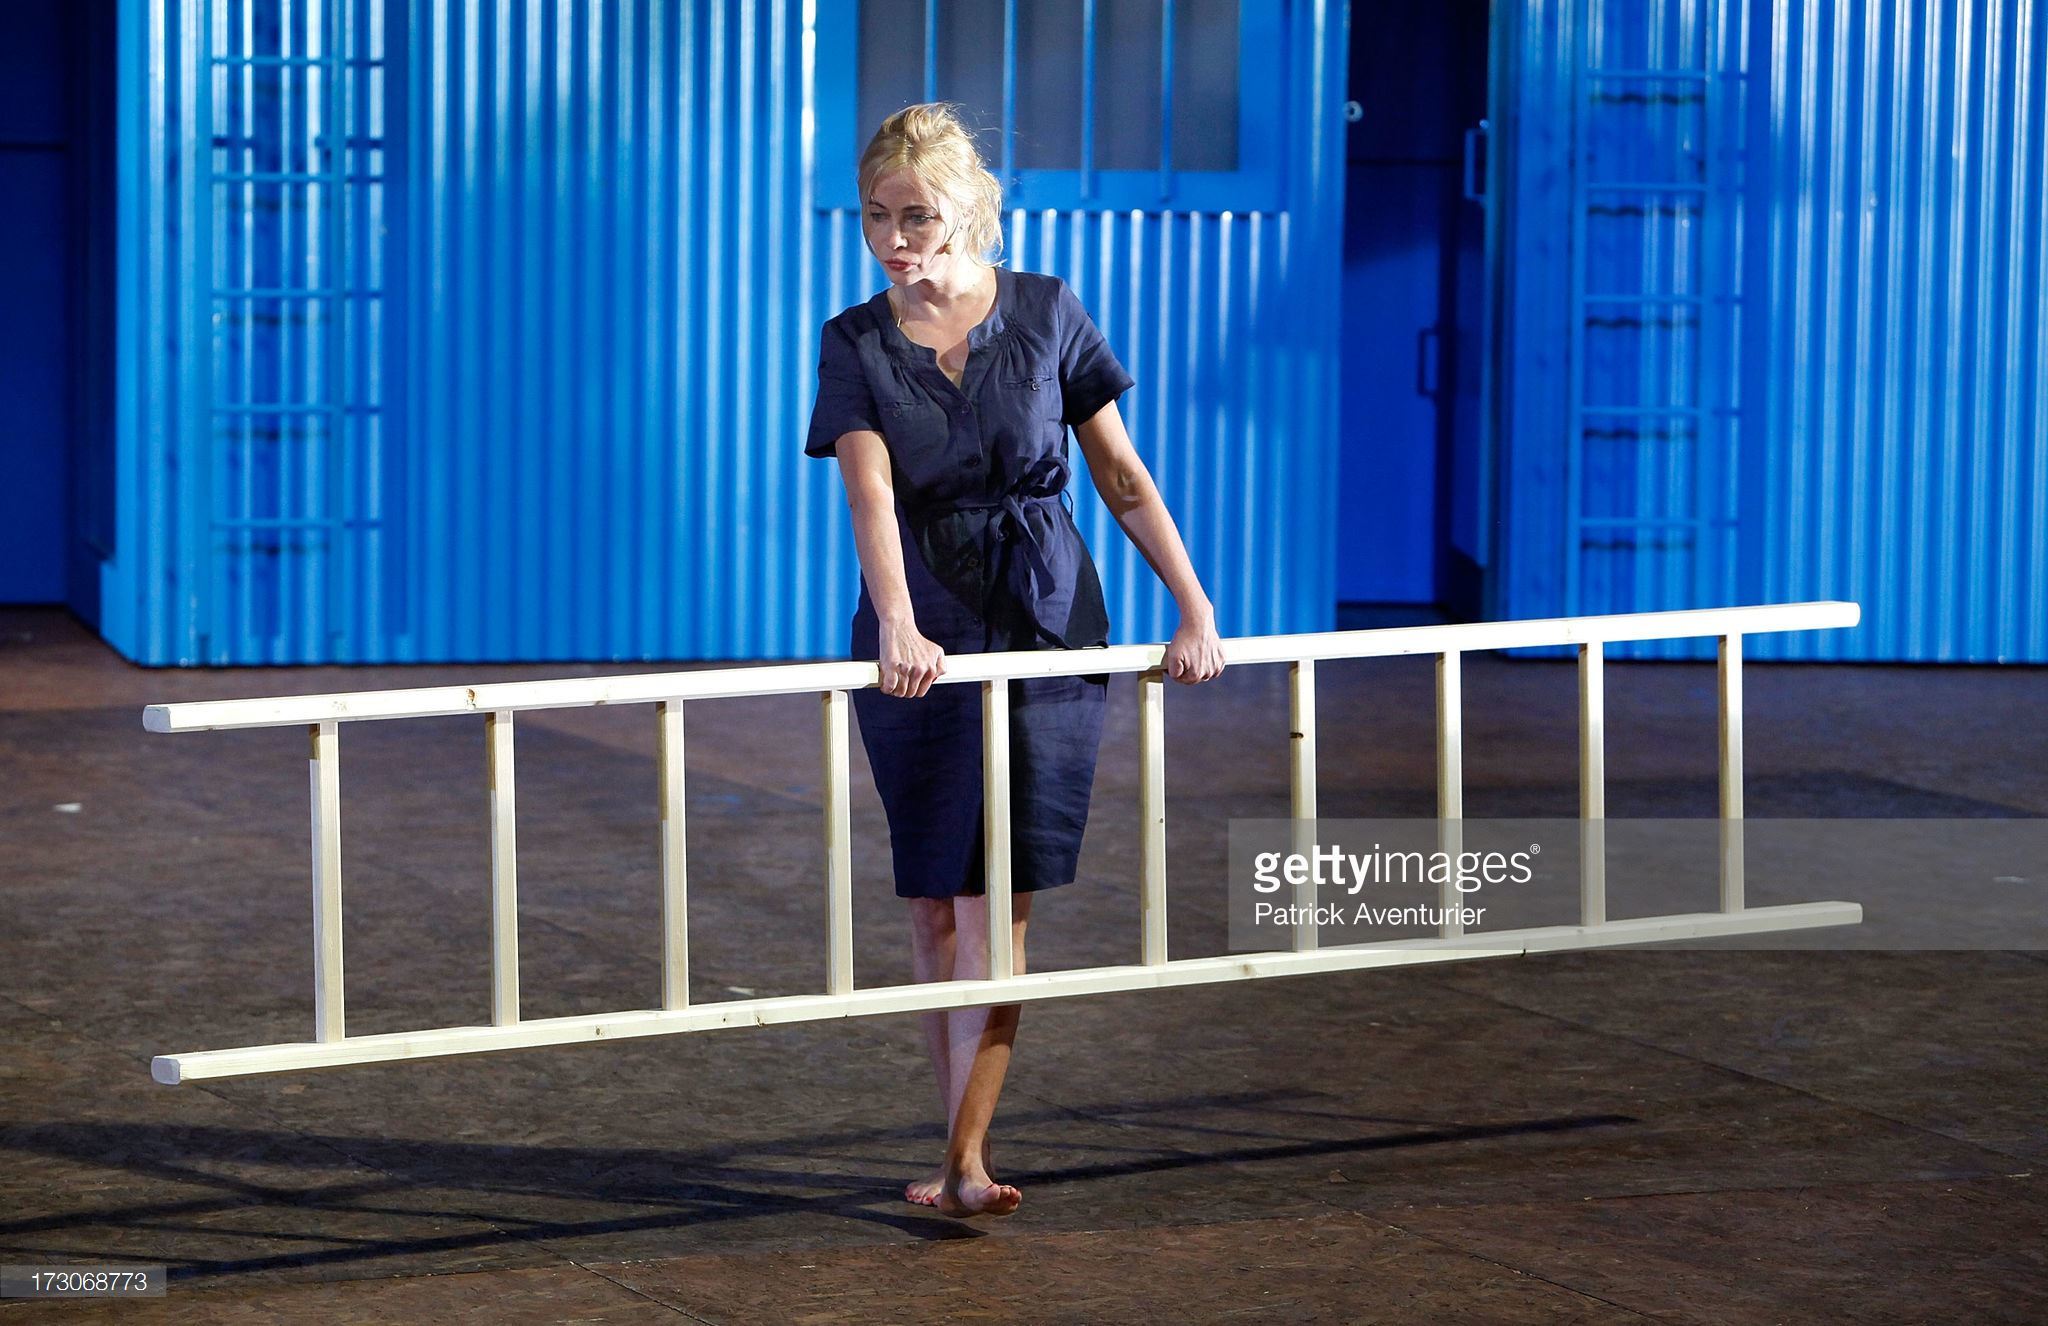 https://pics.wikifeet.com/Emmanuelle-B%C3%A9art-Feet-2595505.jpg